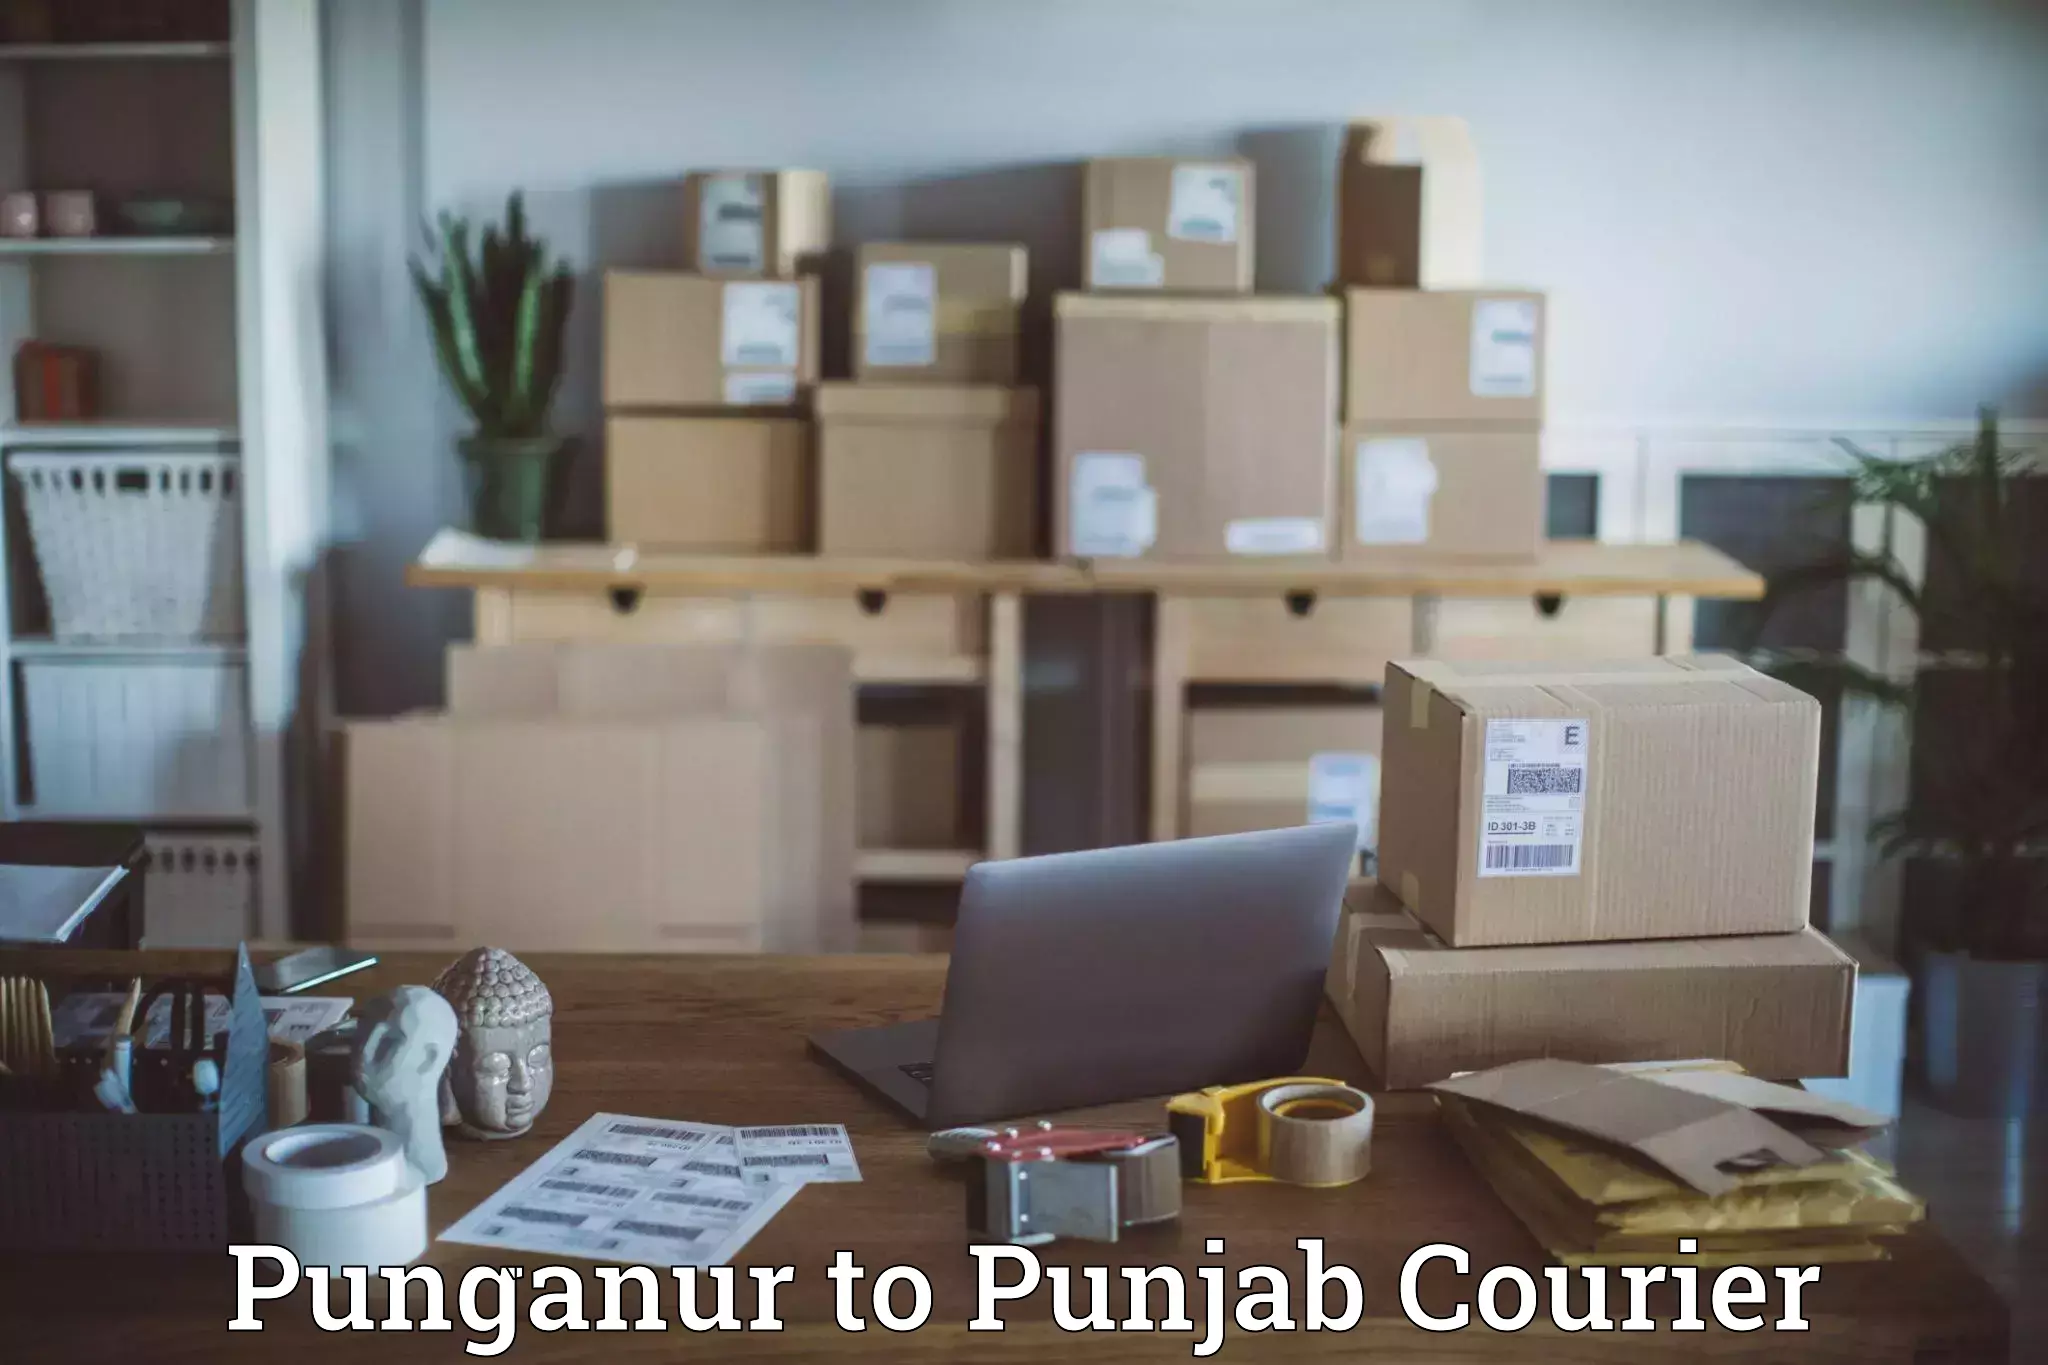 Large package courier Punganur to Talwara